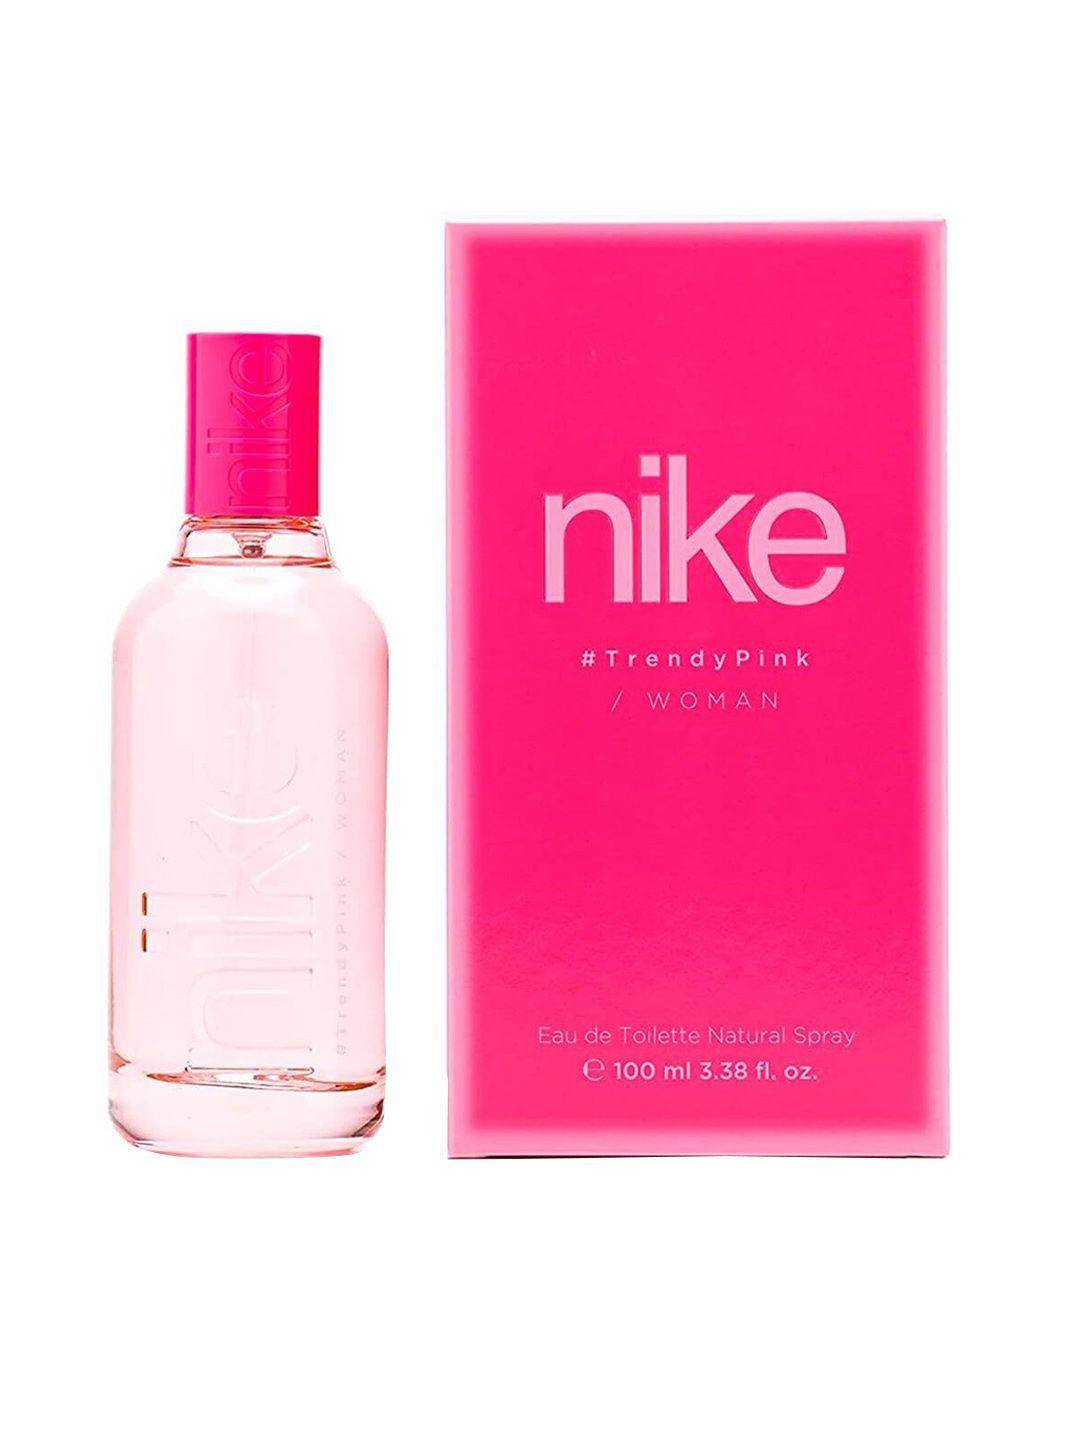 nike woman trendy pink eau de toilette natural spray 100ml